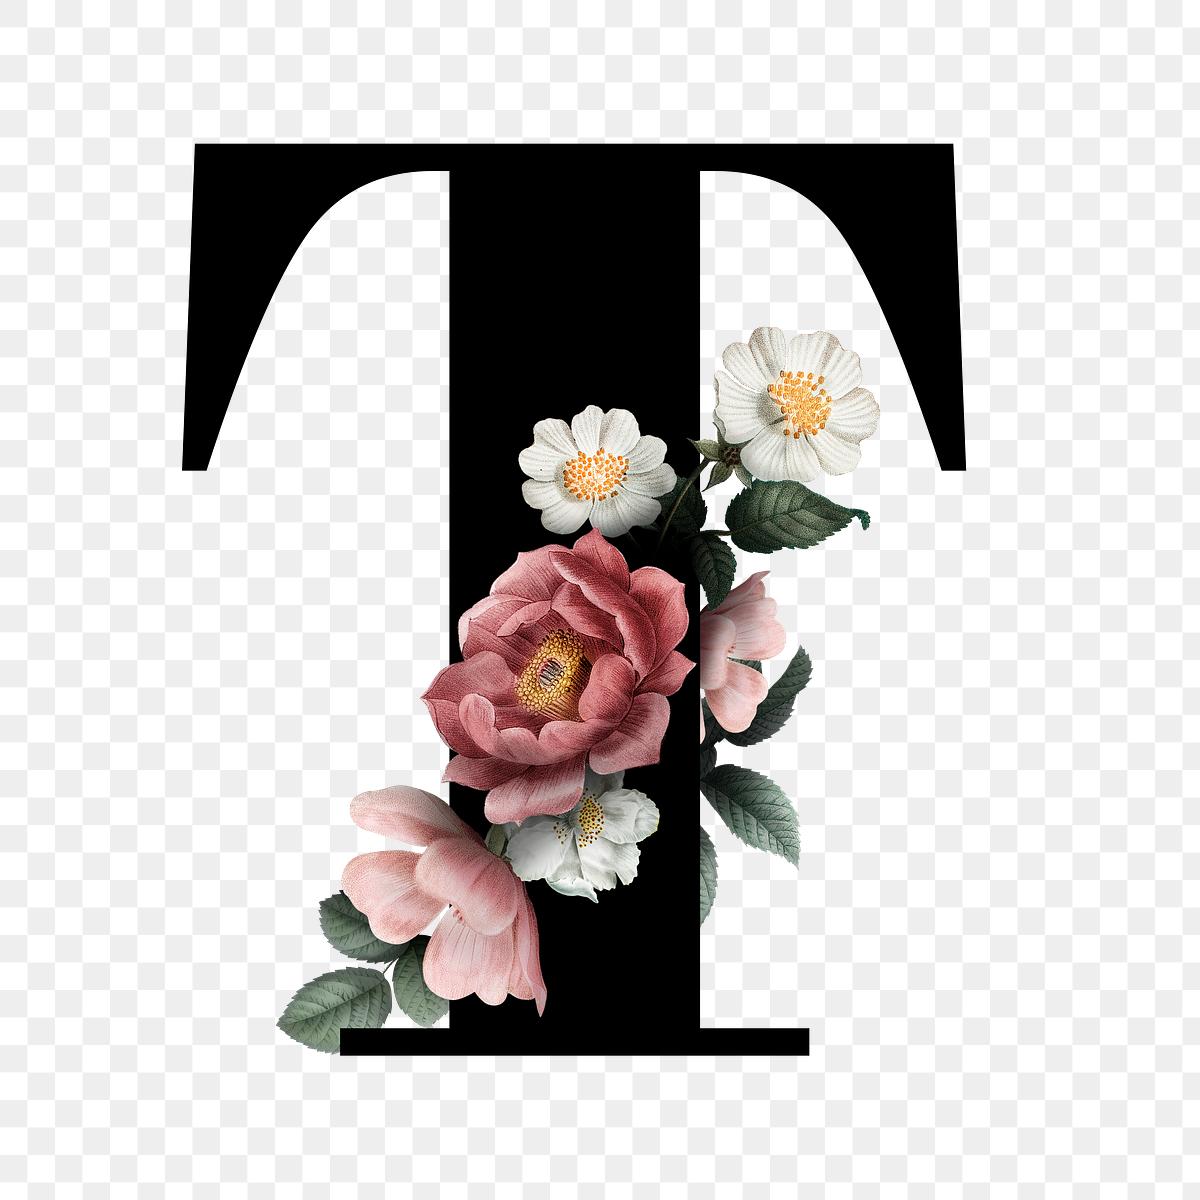 Download Floral letter T font | Free transparent png - 583212